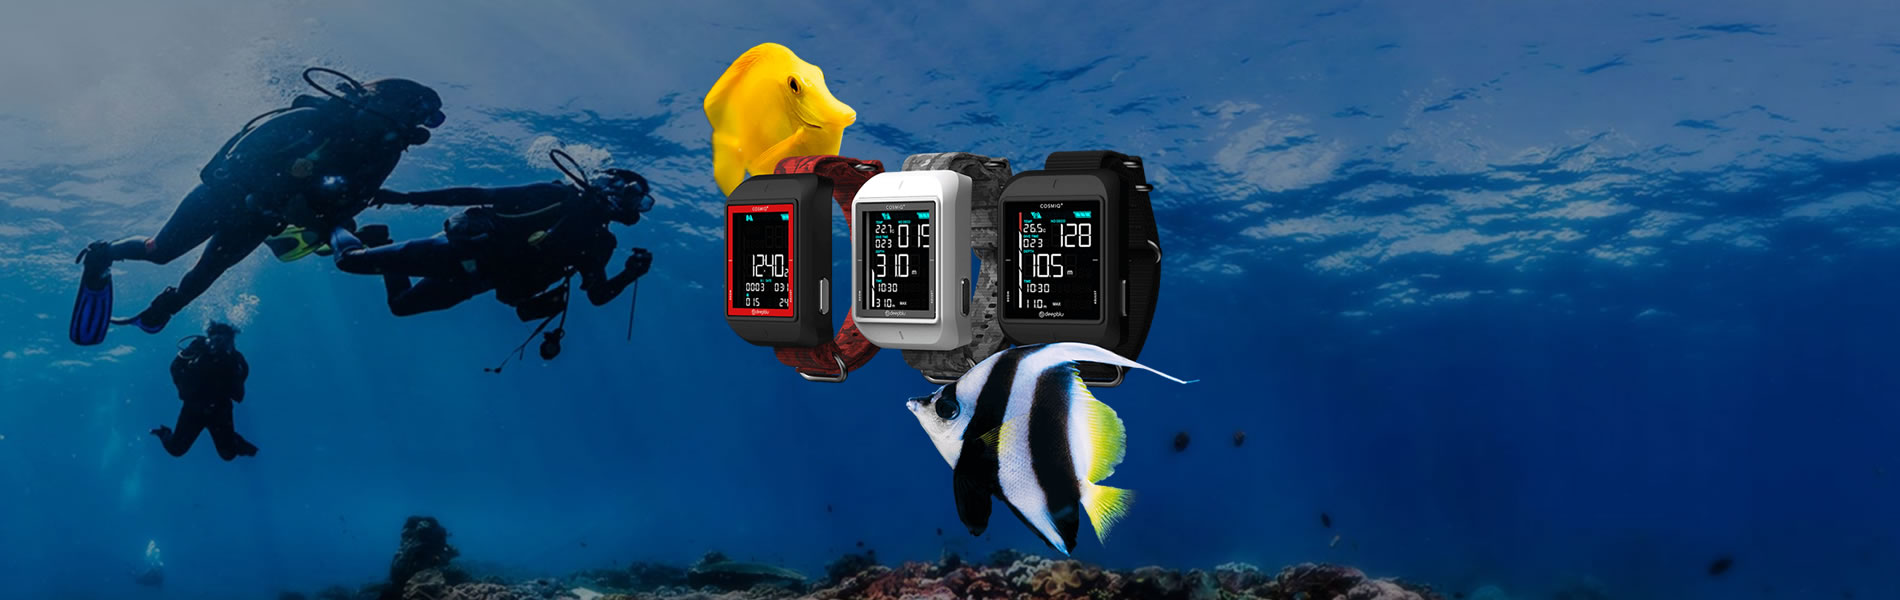 100% Aqualung Scuba Diving Nitrox Dive Computers 21%